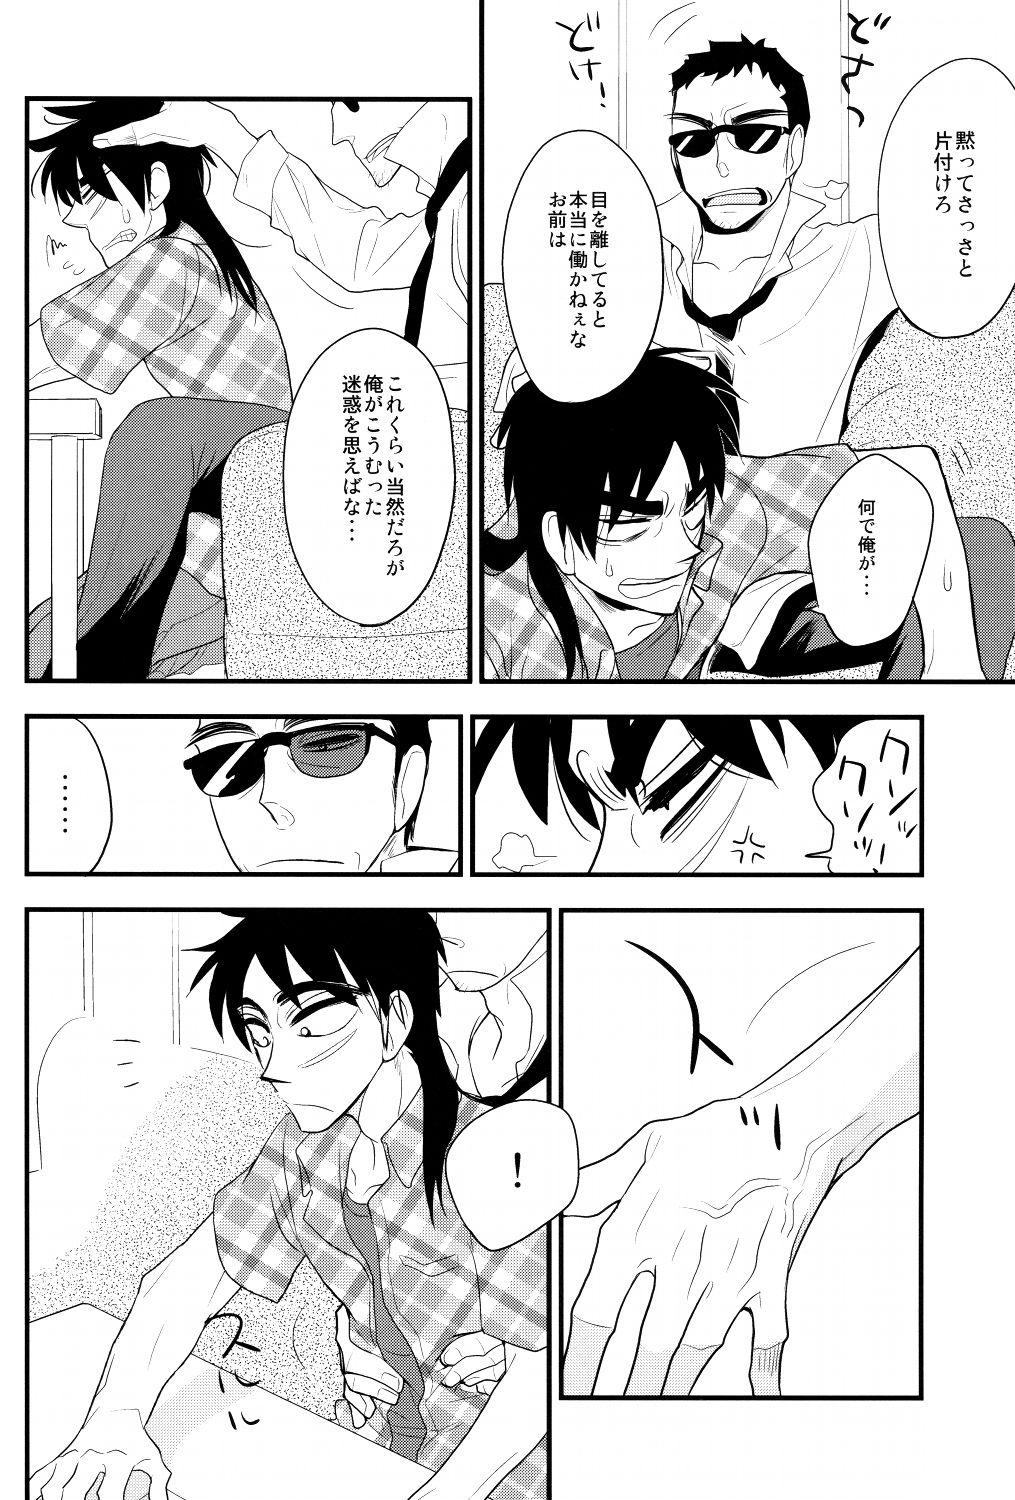 Best Blowjobs Gorimuchuu! - Kaiji Lesbians - Page 5